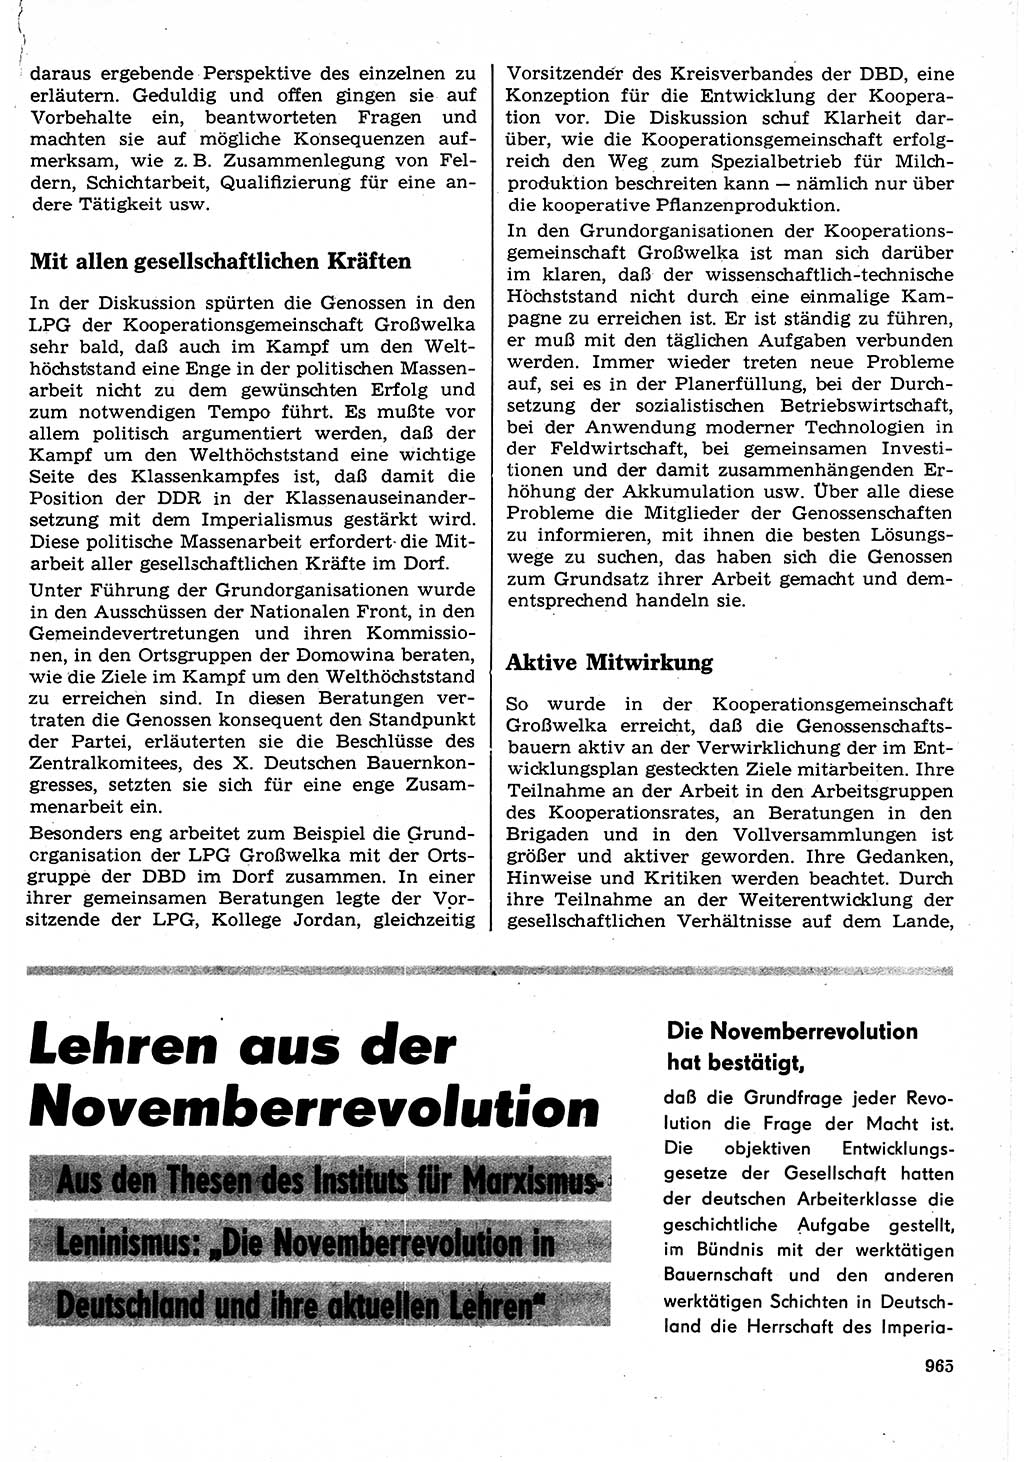 Neuer Weg (NW), Organ des Zentralkomitees (ZK) der SED (Sozialistische Einheitspartei Deutschlands) für Fragen des Parteilebens, 23. Jahrgang [Deutsche Demokratische Republik (DDR)] 1968, Seite 949 (NW ZK SED DDR 1968, S. 949)